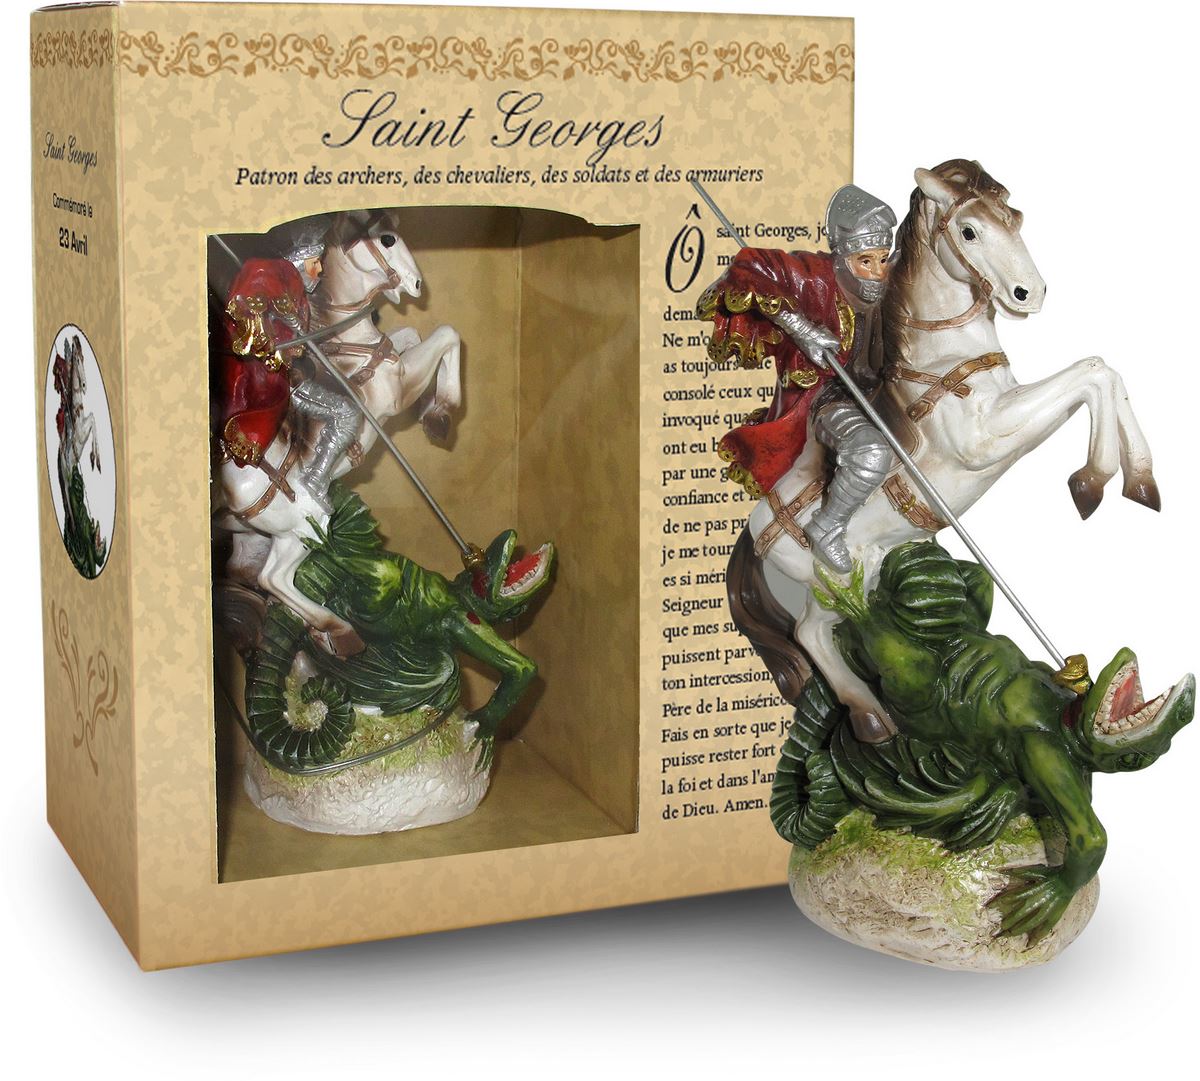 ferrari & arrighetti statua di san giorgio da 12 cm in confezione regalo con segnalibro, statuetta personaggio religioso con scatola regalo decorativa, testi in francese